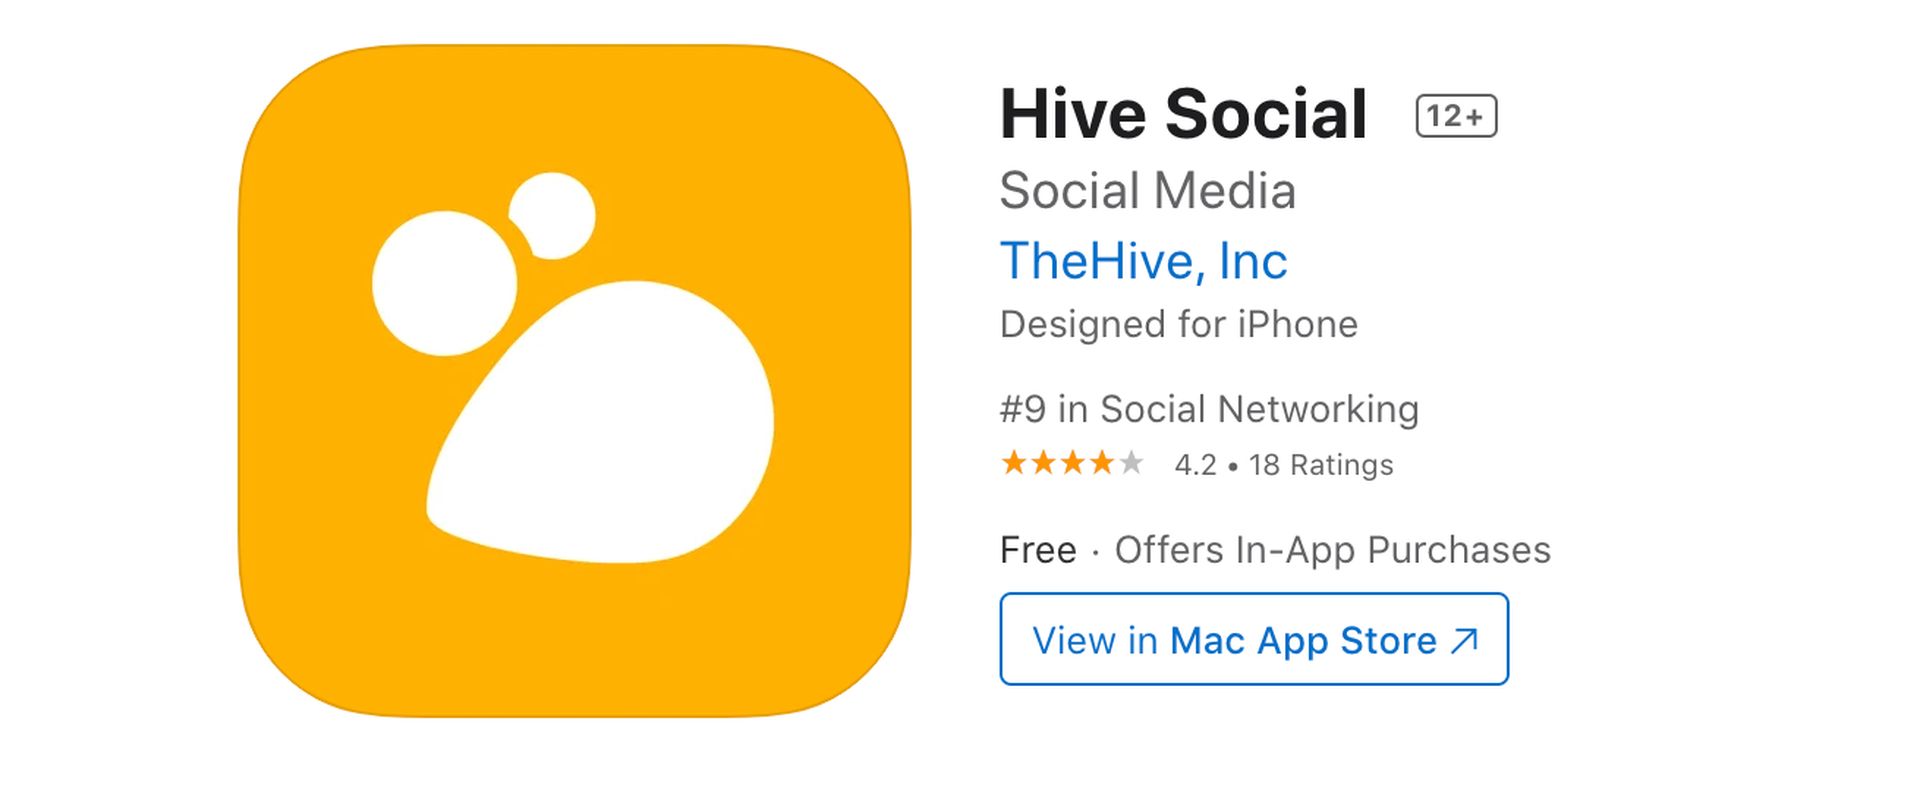 Кратковременное правление Илона Маска в Twitter заставляет многих пользователей покидать приложение, и мы сравним одну из альтернатив здесь, в этом сравнении Hive и Twitter.